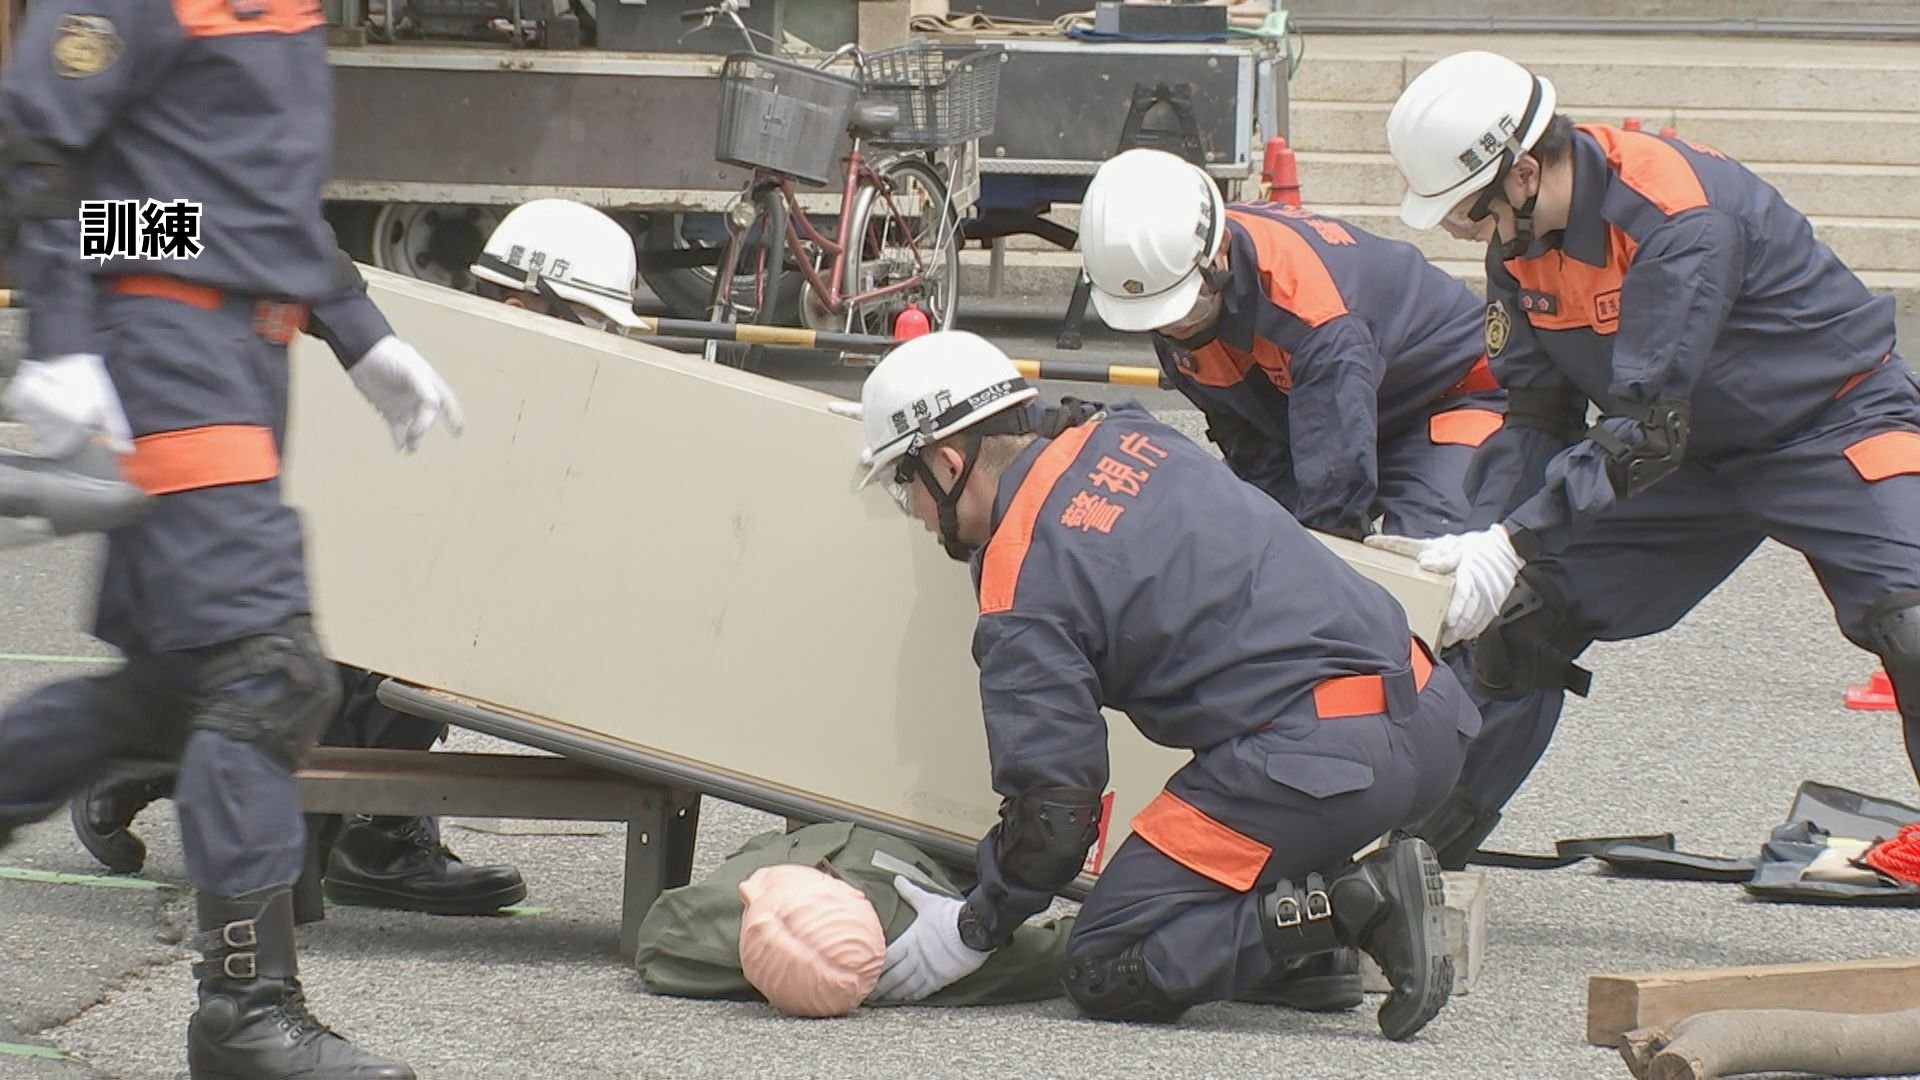 7月の隅田川花火大会に向けて　警視庁などが不審物を処理するテロ対処訓練を実施